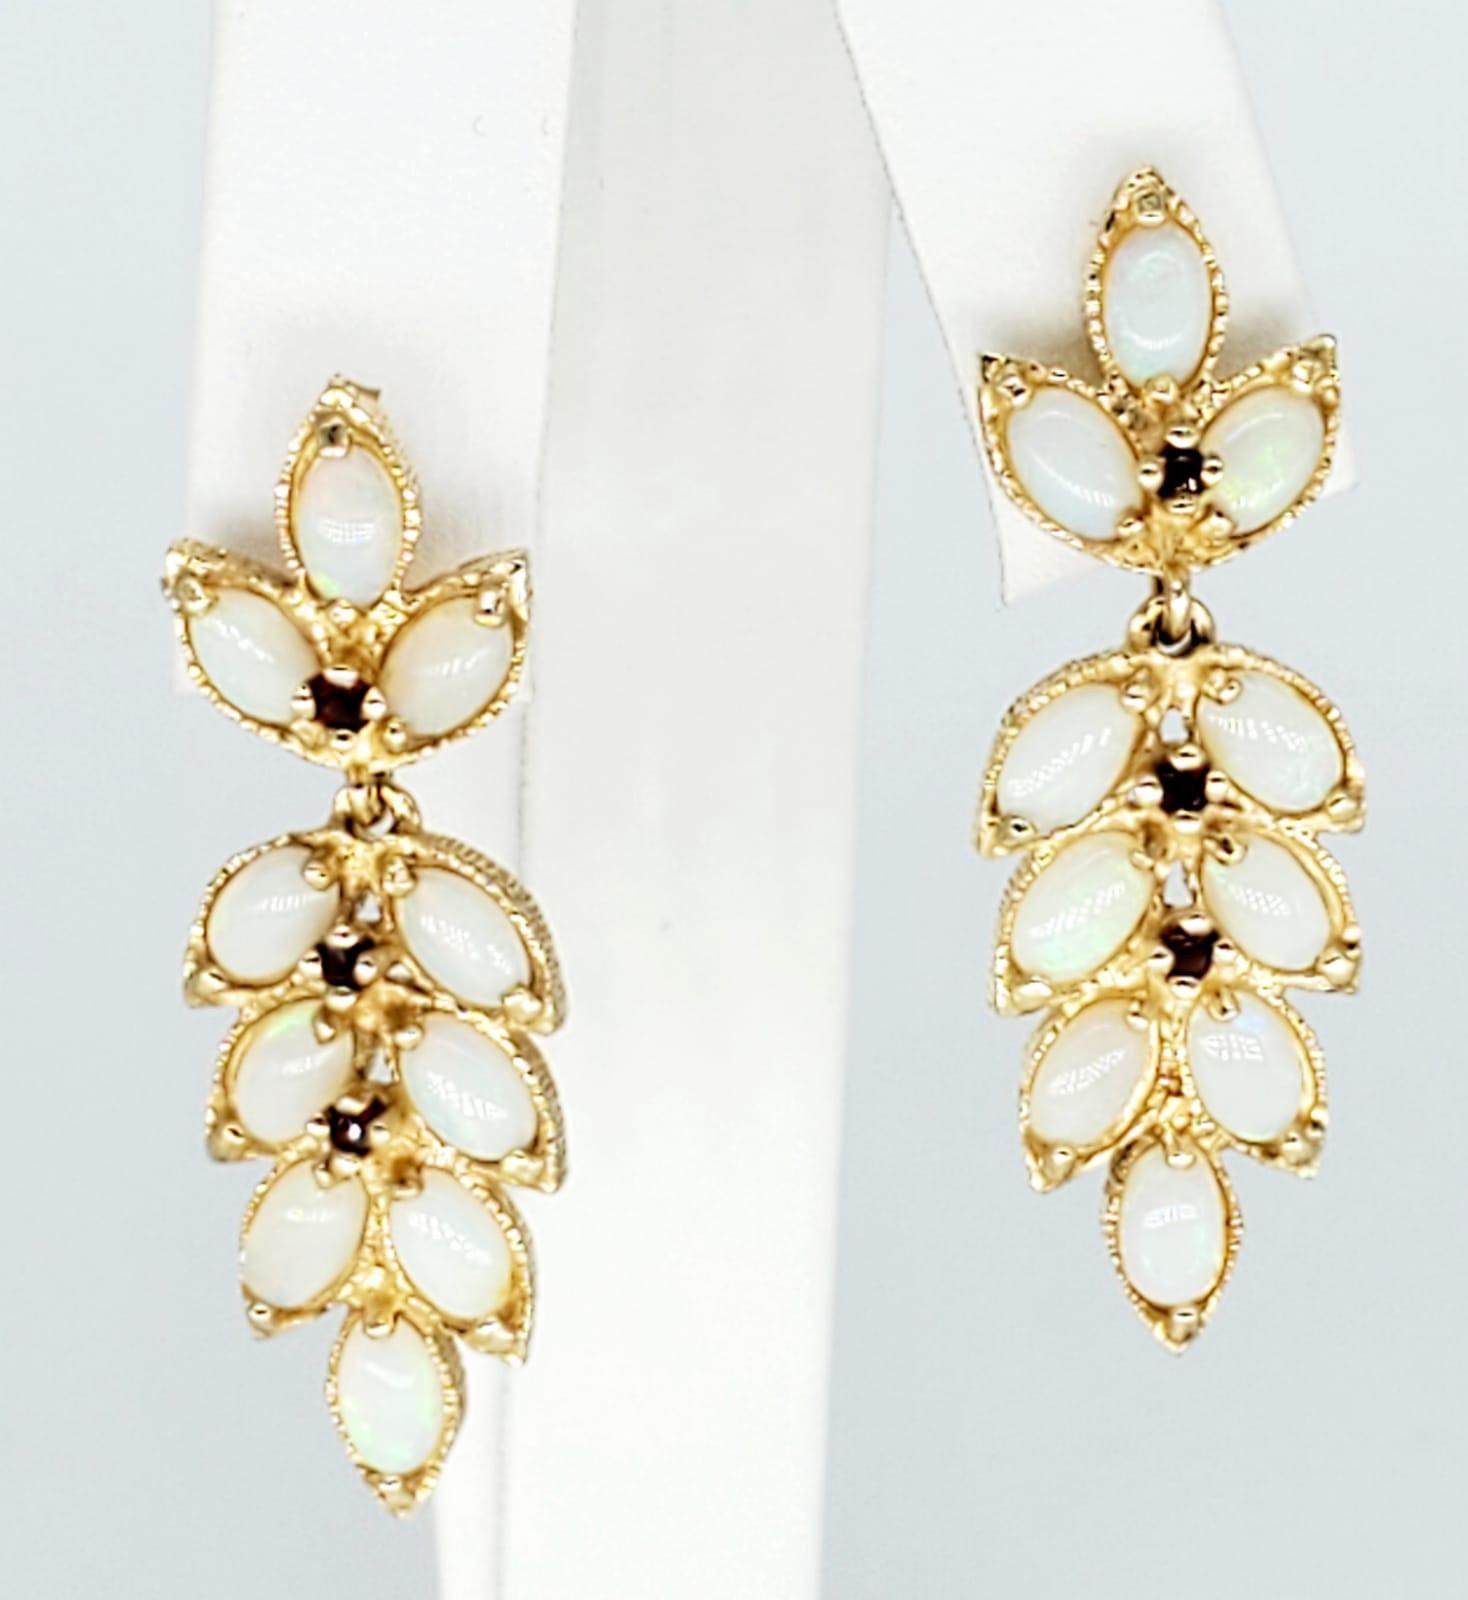 Vintage 3 Carat Opal Leaf Design Dangle Earrings 14k Gold. Les boucles d'oreilles pèsent 6,9 grammes et mesurent 30mm X 12mm. Les boucles d'oreilles sont estampillées ER.